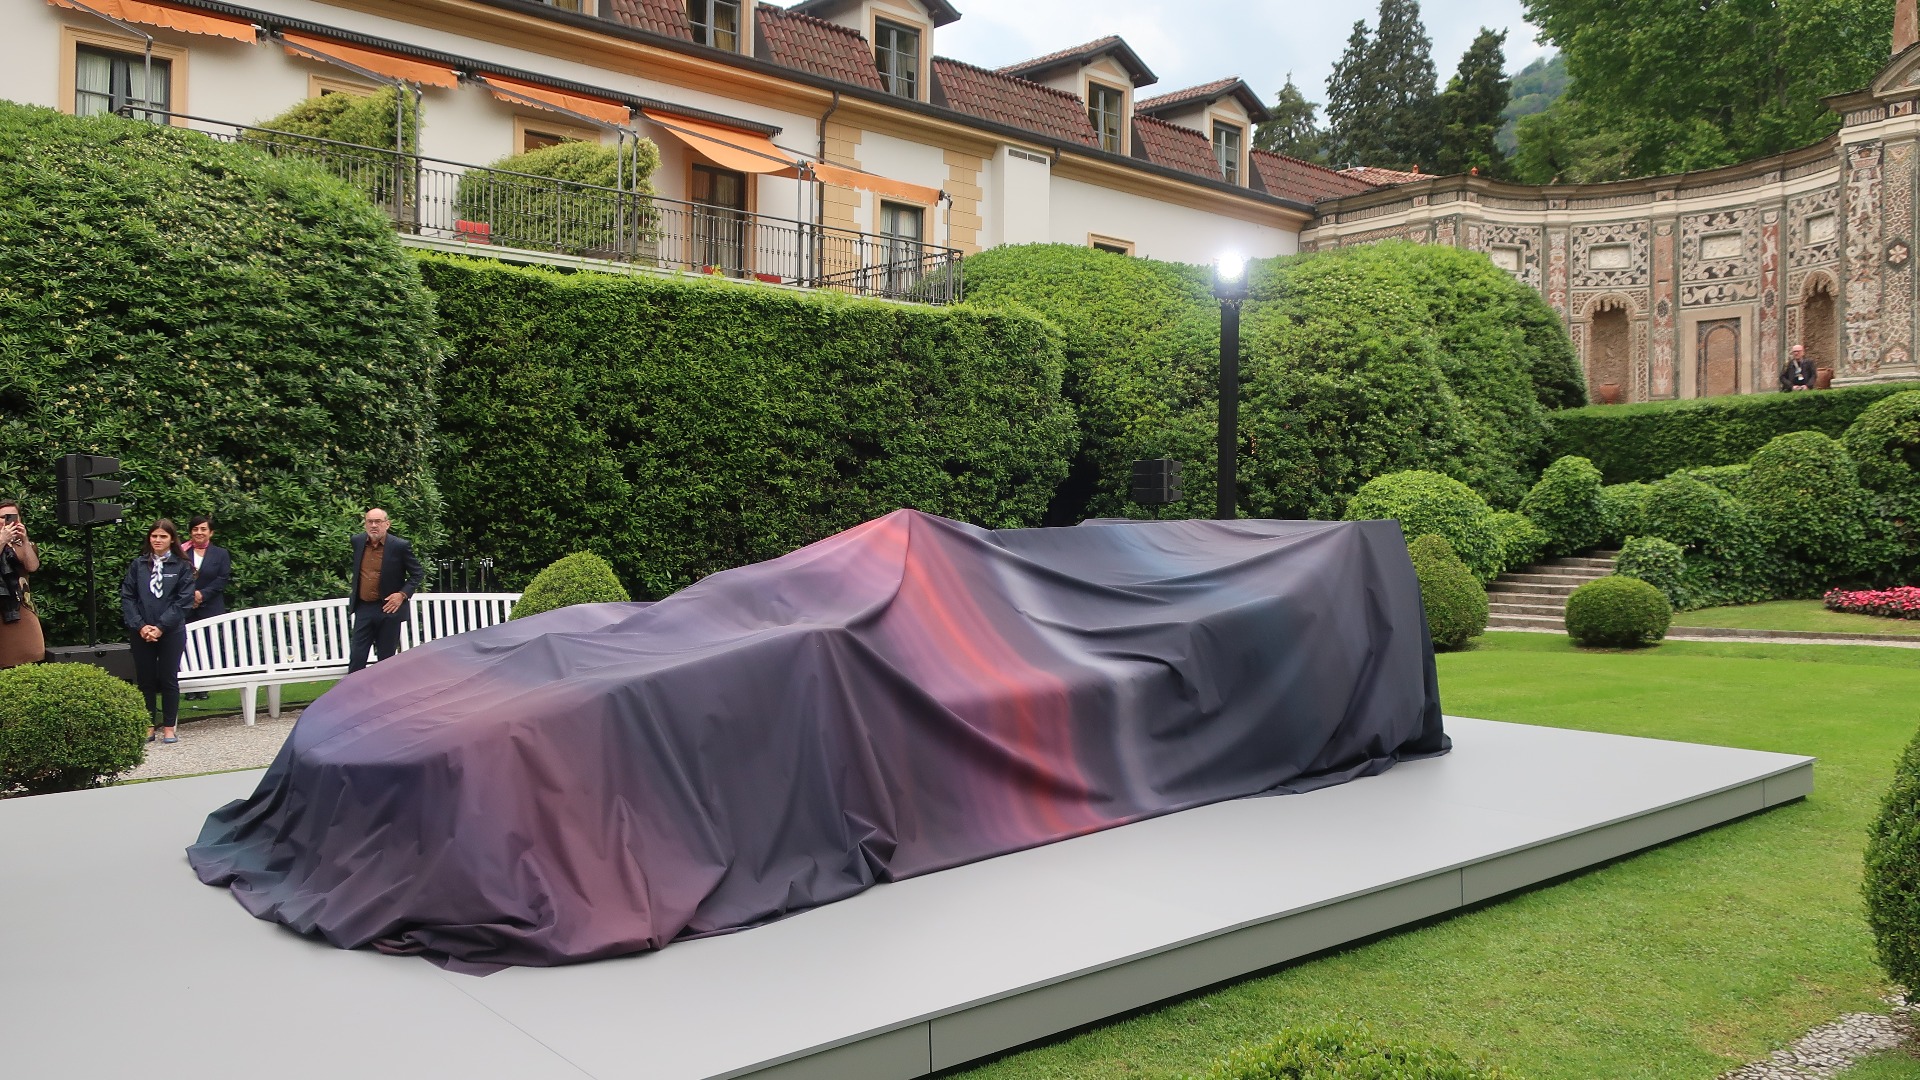 Før avdukingen av bilen fredag kveld på Villa d’Este kunne man skimte spennende former under teppet. 